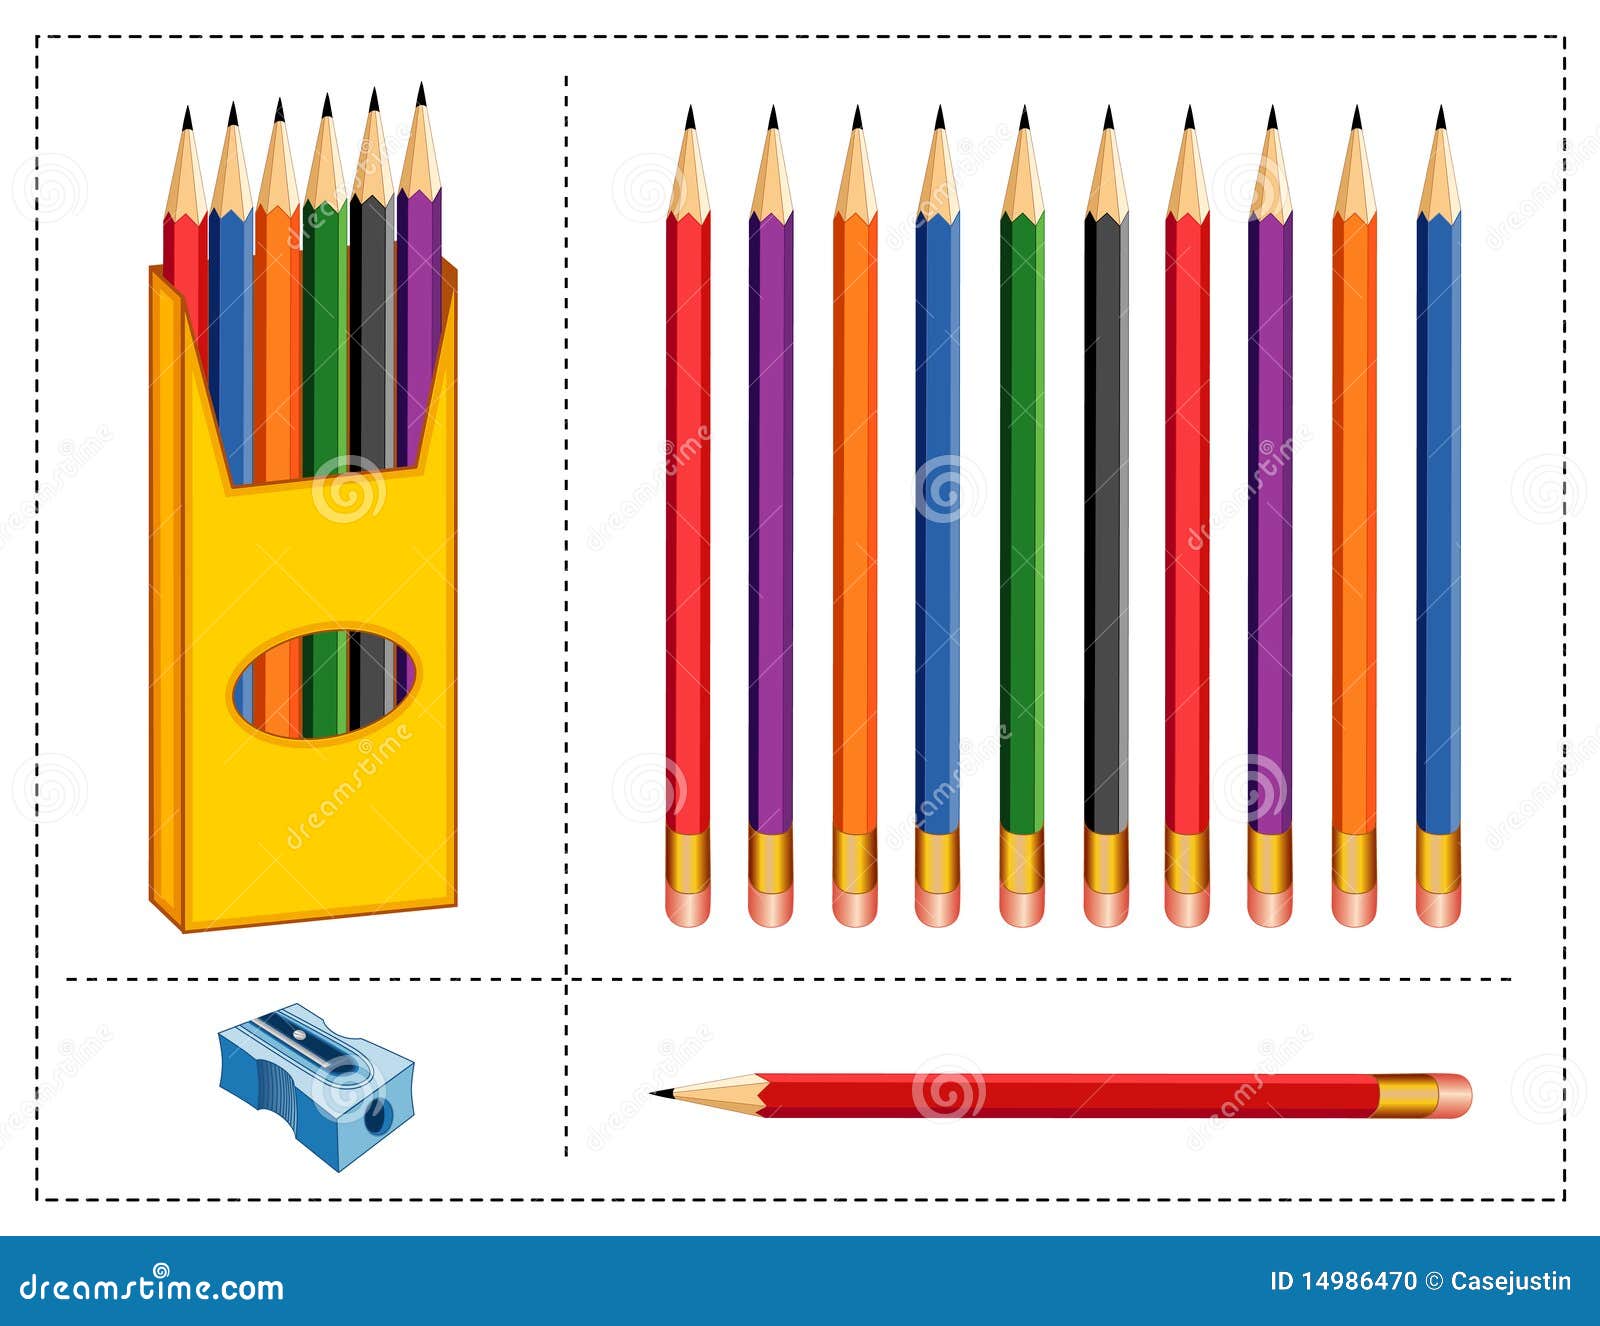 На столе лежат две коробки с карандашами. Коробка цветных карандашей. Коробки с карандашами. Большая коробка для карандашей. Коробка с карандашами на прозрачном фоне.